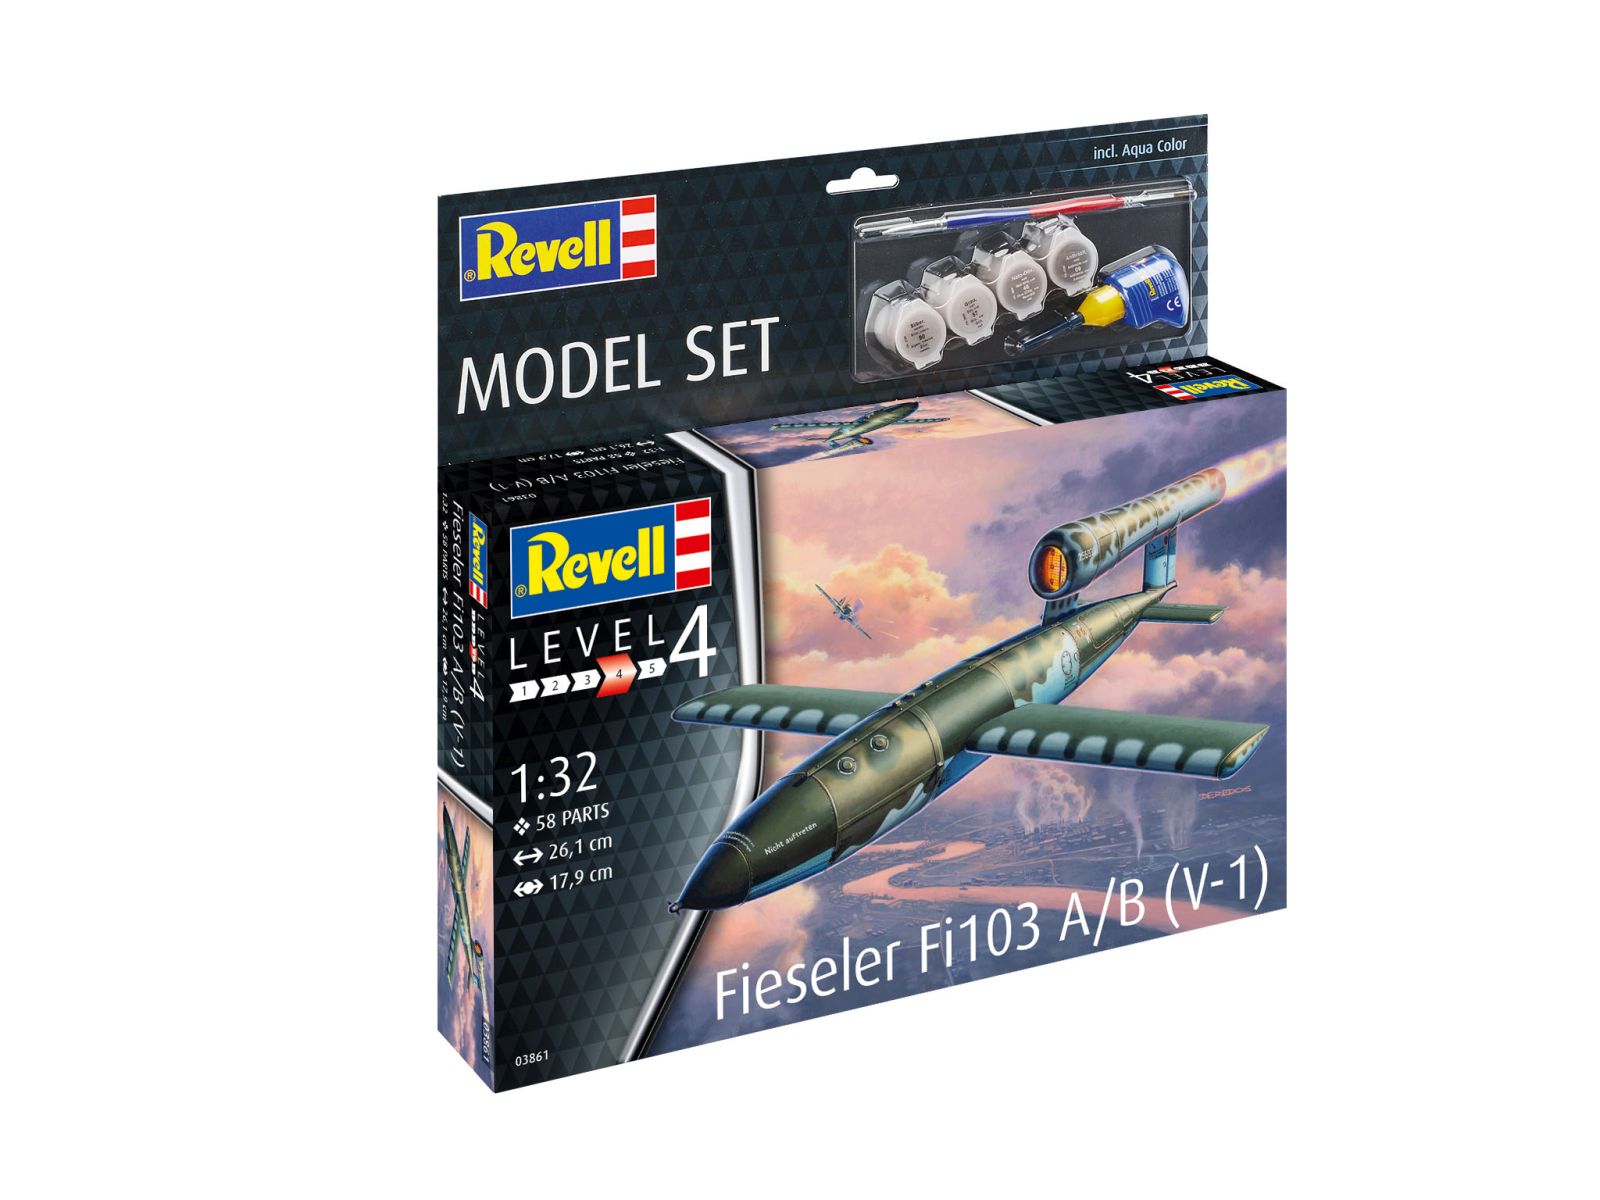 Revell 63861 - Model Set Fieseler Fi103 A/B (V-1)